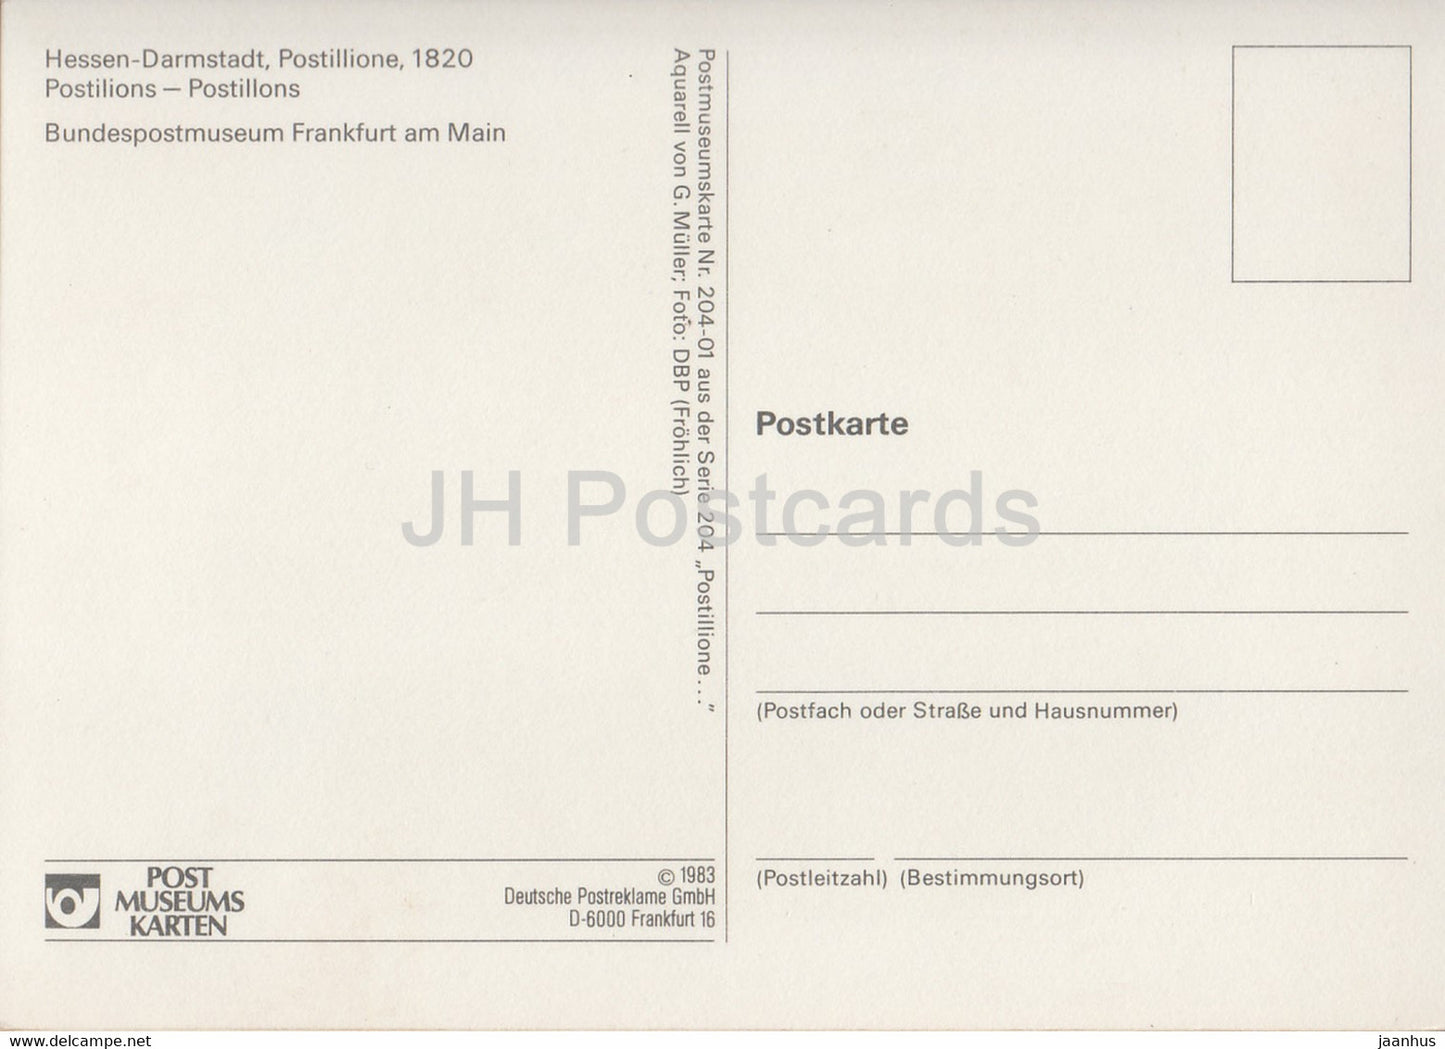 Postillione - Hessen Darmstadt - Postboten - Postdienst - Deutschland - unbenutzt